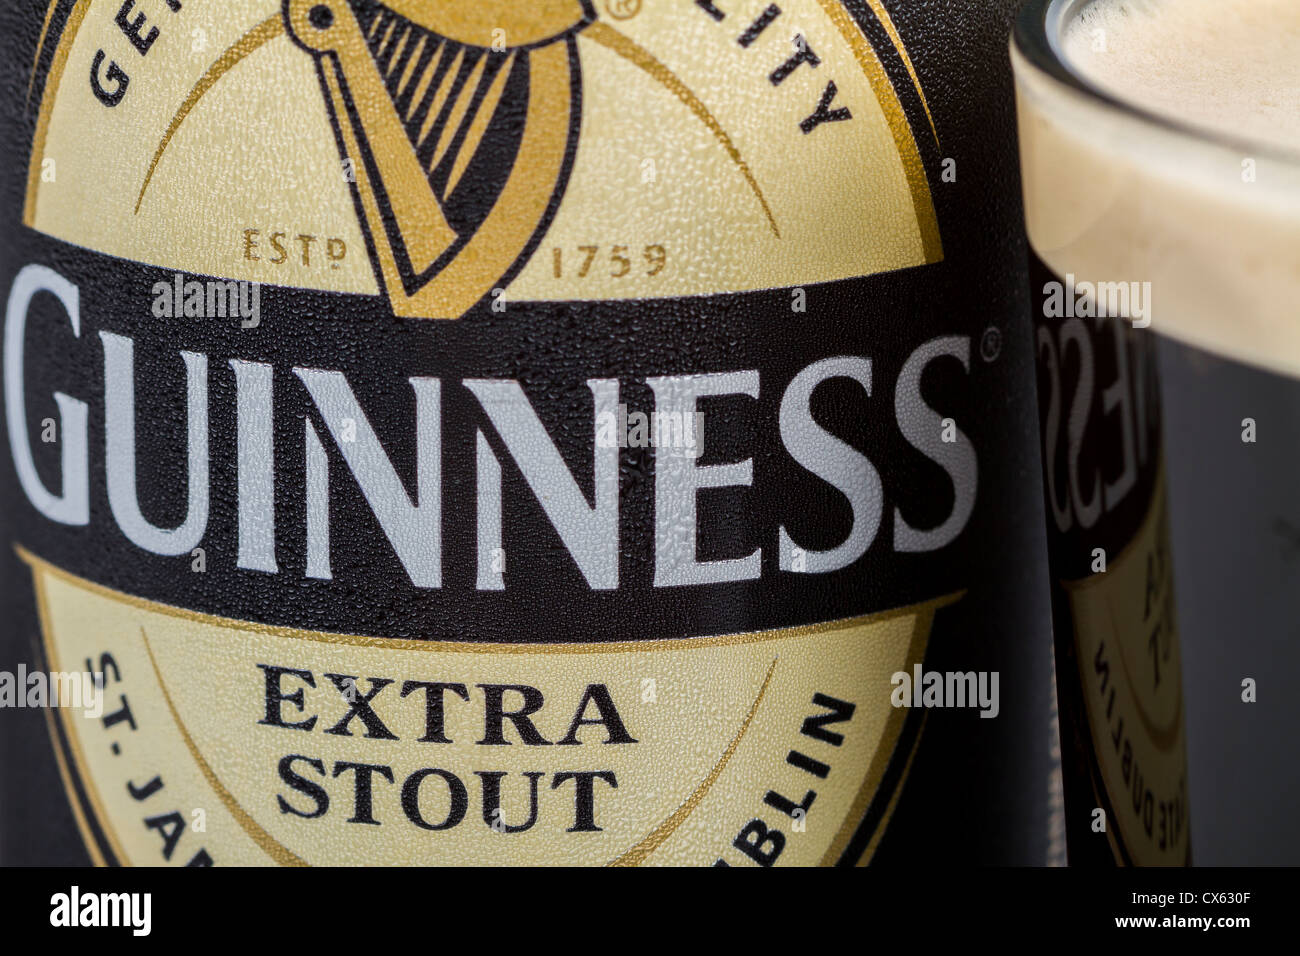 Dublin, Irland - 12. September 2012. Dies ist eine Studioaufnahme Produkt einer Dose Guinness stout neben einem Glas frisch gegossen Stockfoto